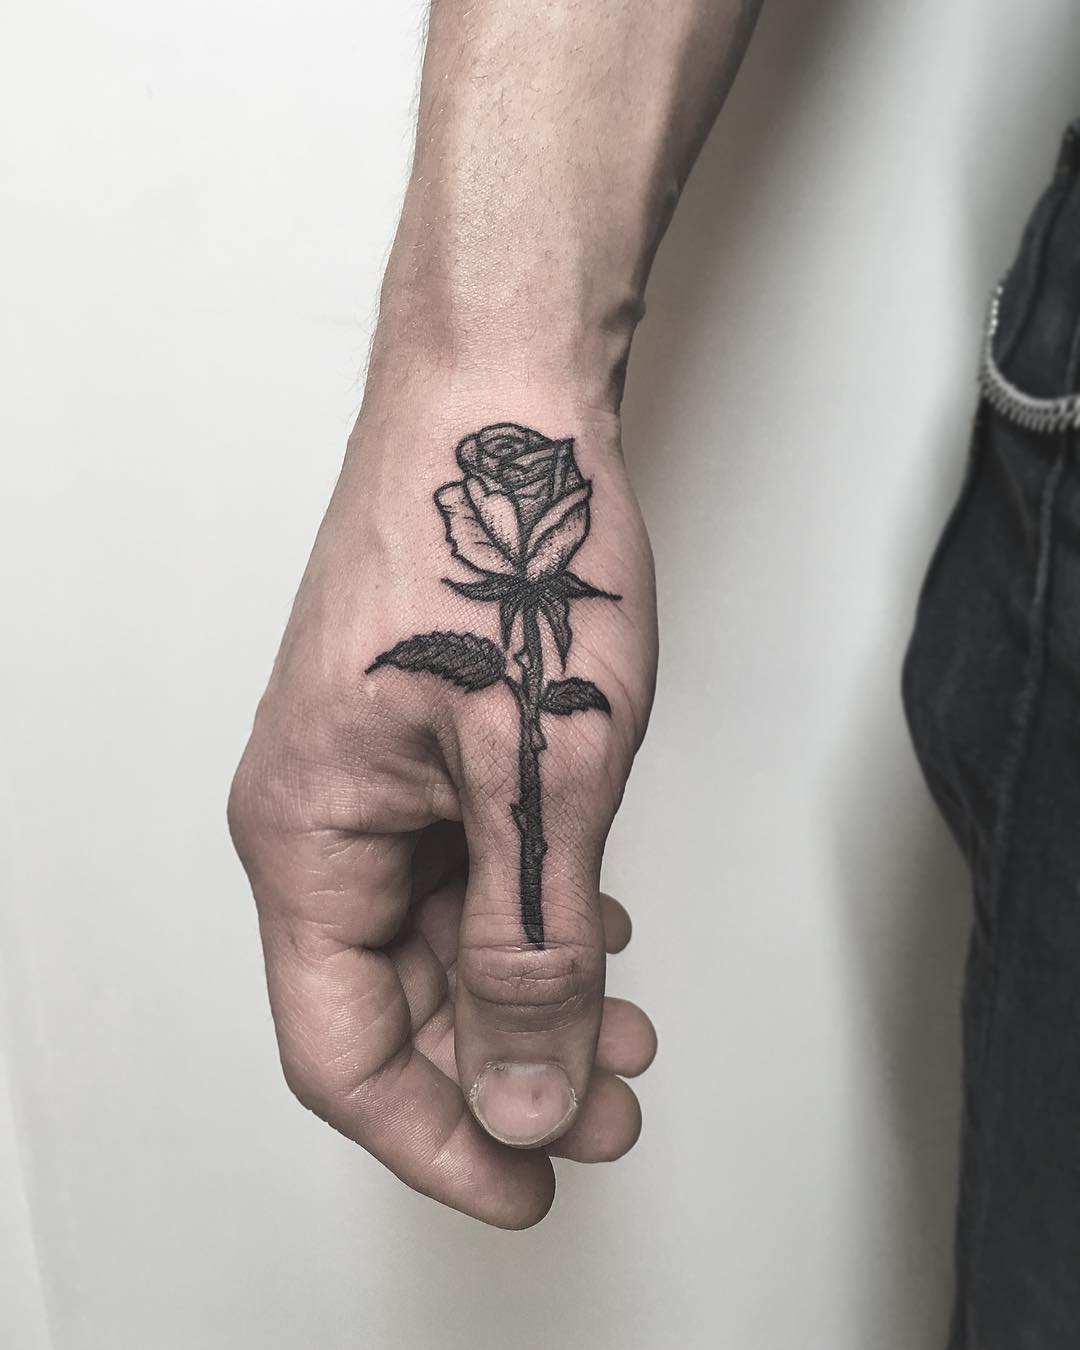 Rose tattoo on a thumb by tattooist Spence @zz tattoo